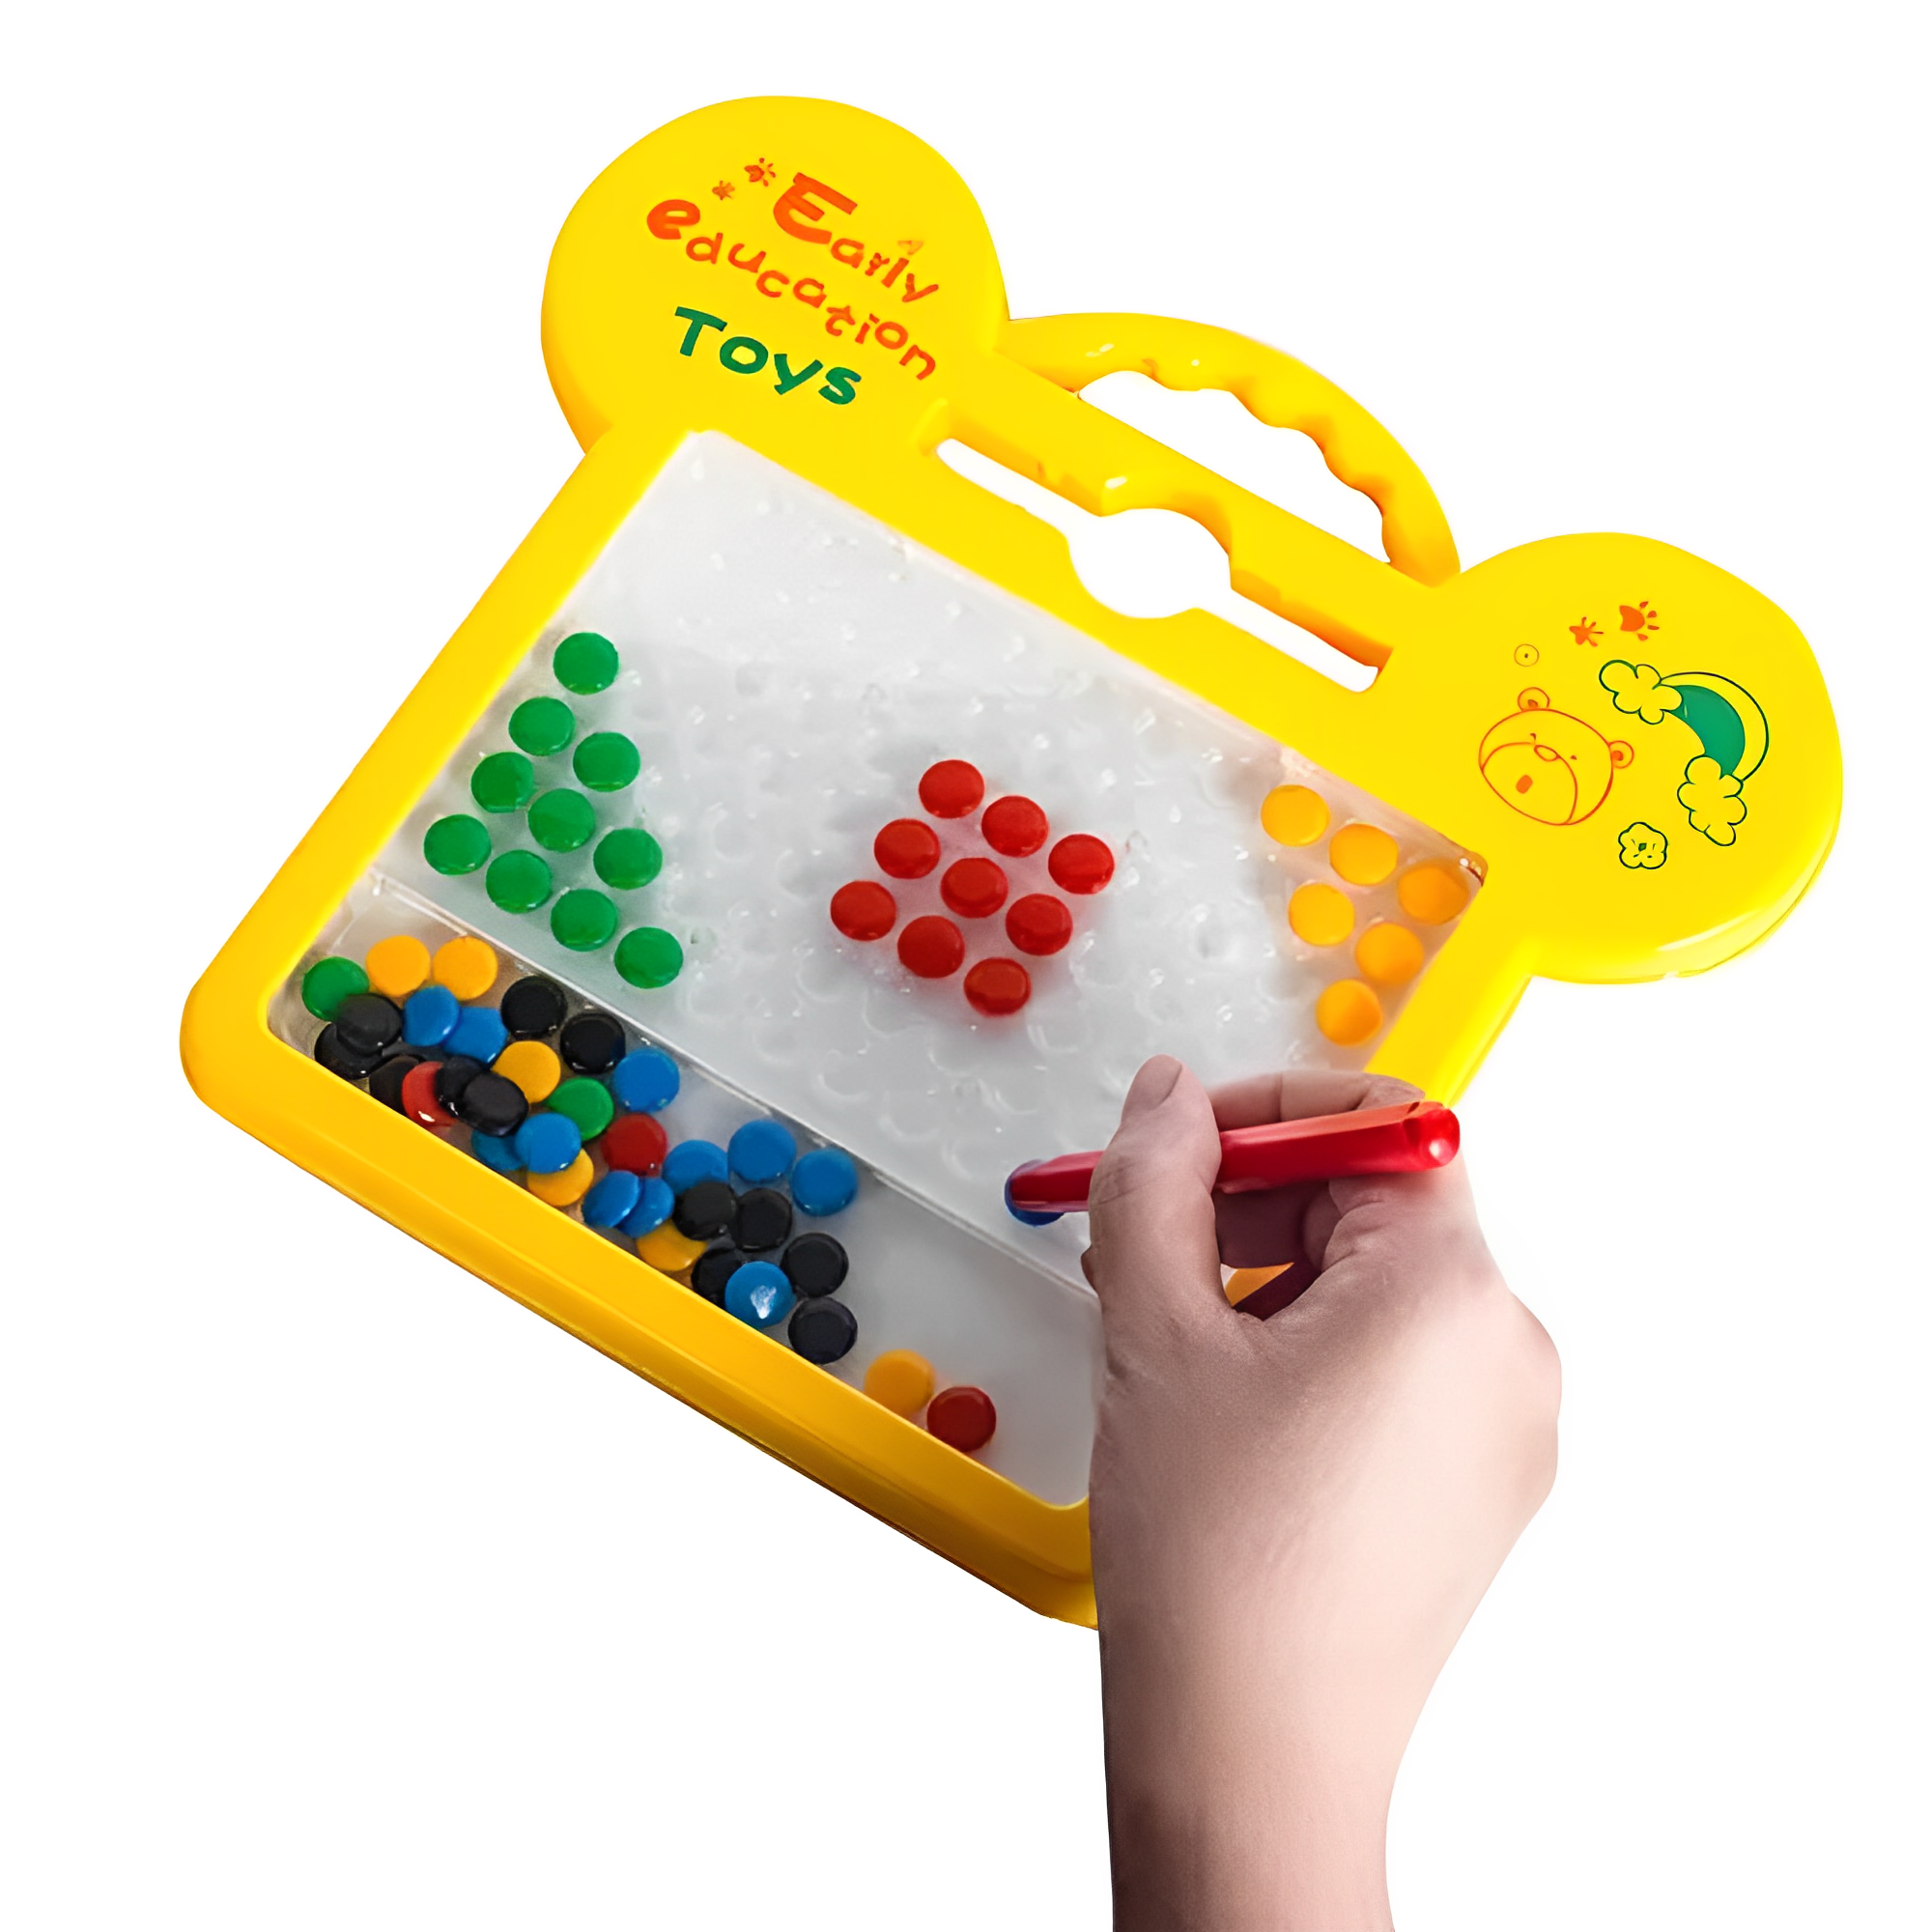 Tablero de dibujo magnético, tablero de dibujo magnético divertido tablero  magnético grande juguete tablero de dibujo magnético juguete tecnología  innovadora